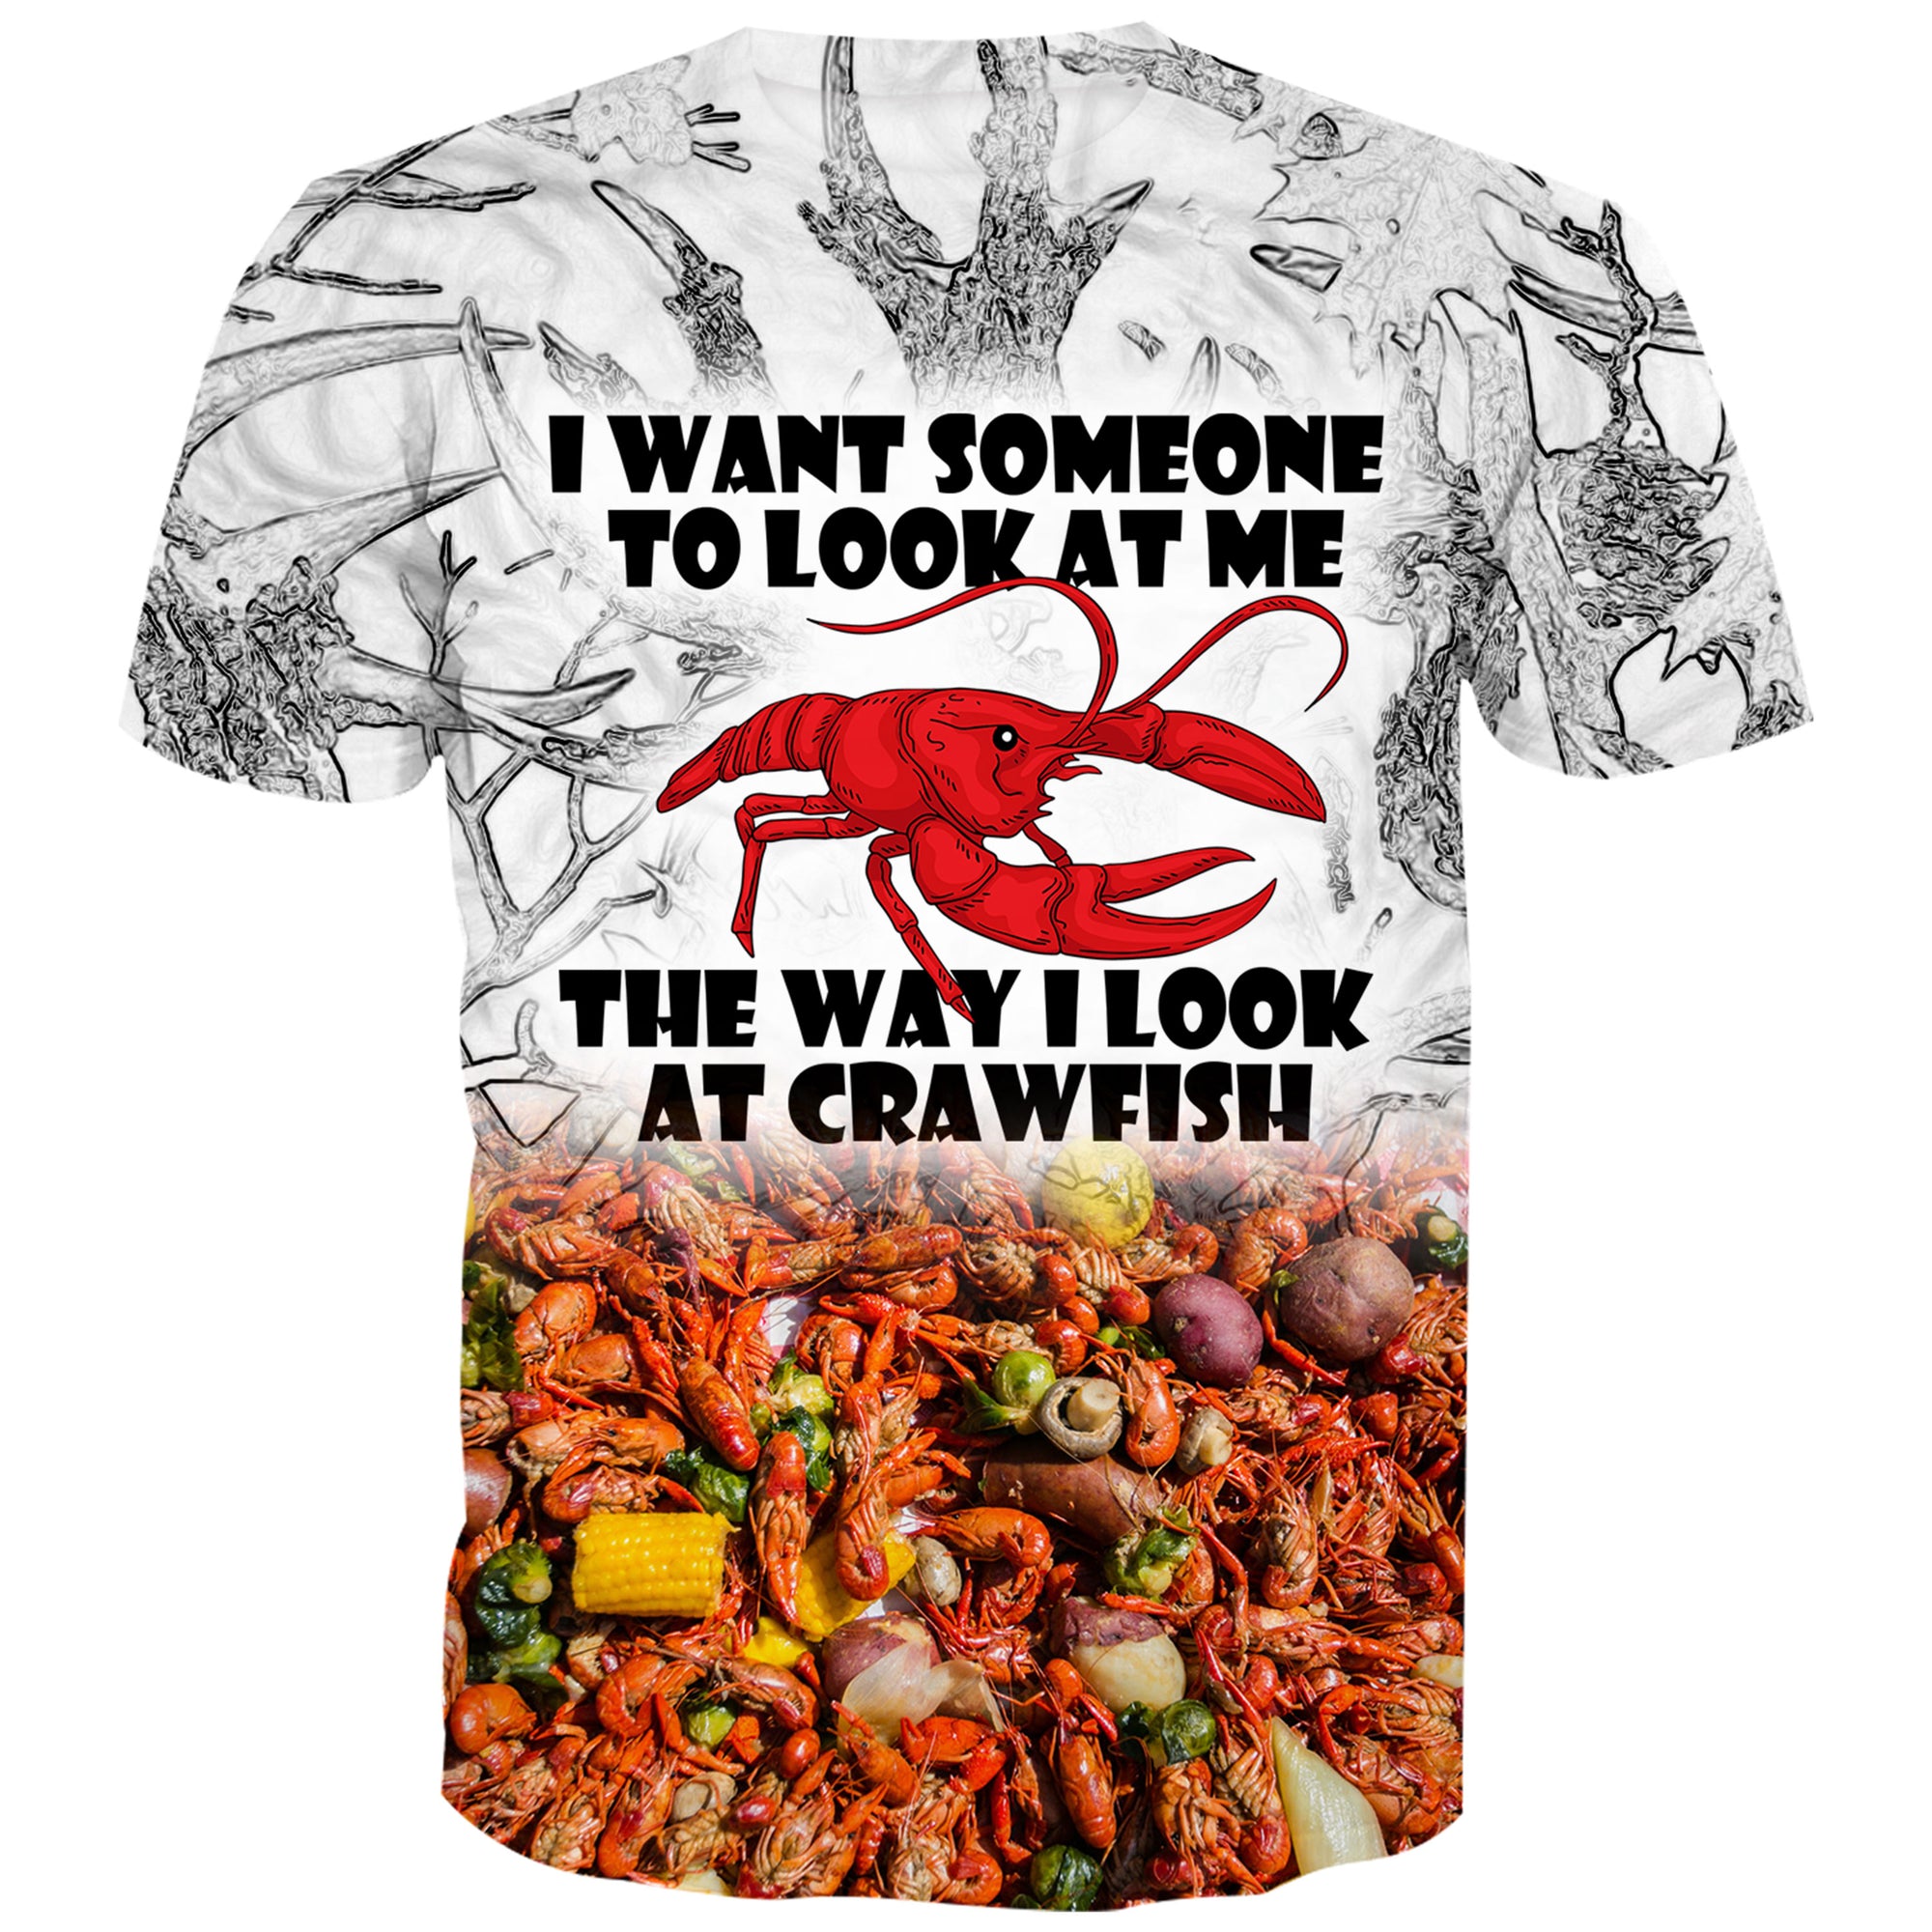 The way I look at Crawfish - T-Shirt